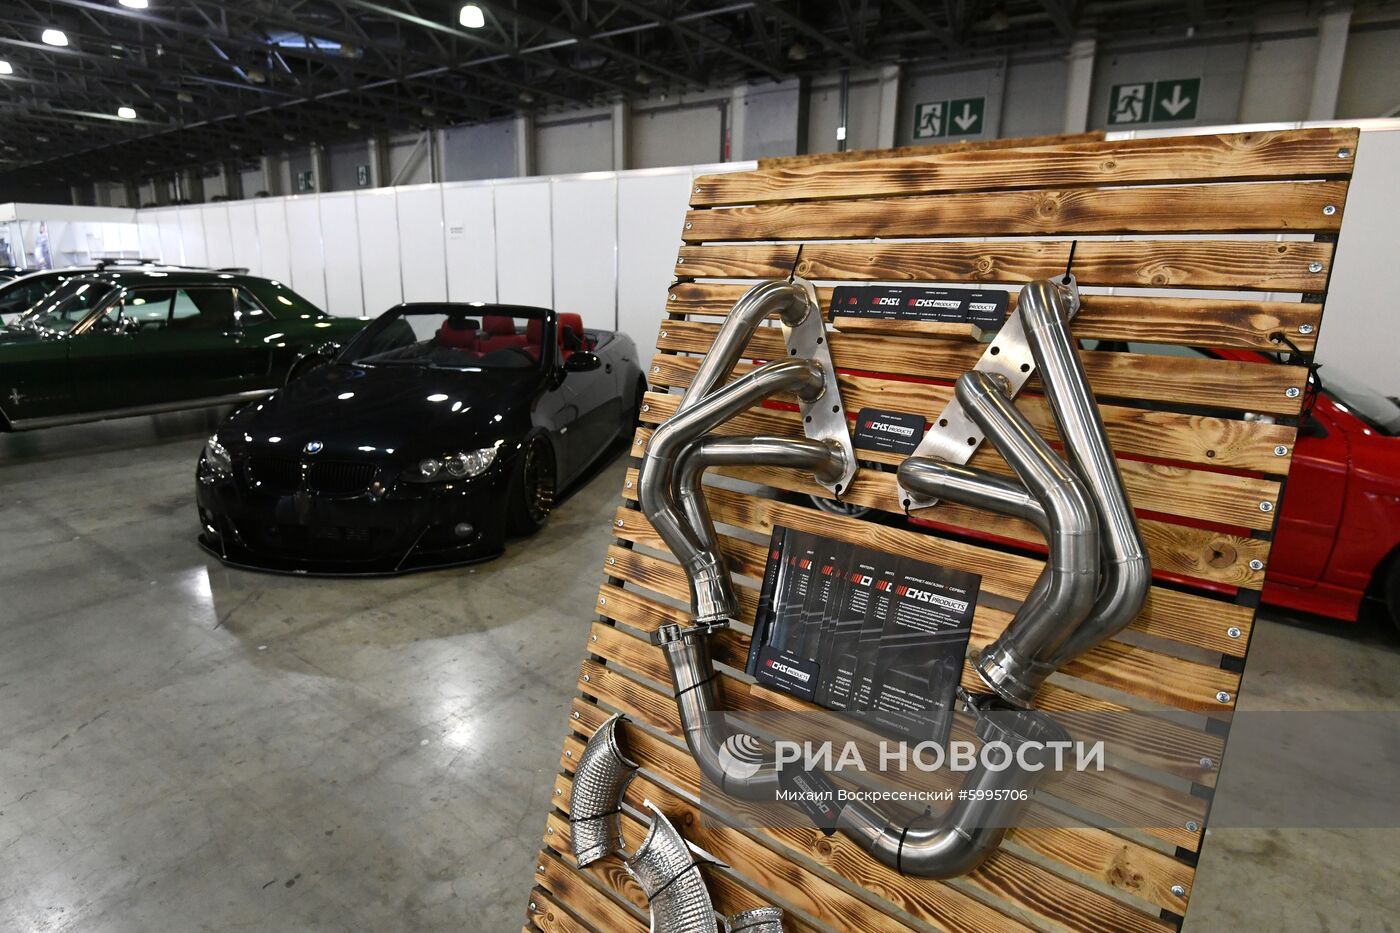 Открытие международной выставки автомобильной индустрии "Интеравто-2019"